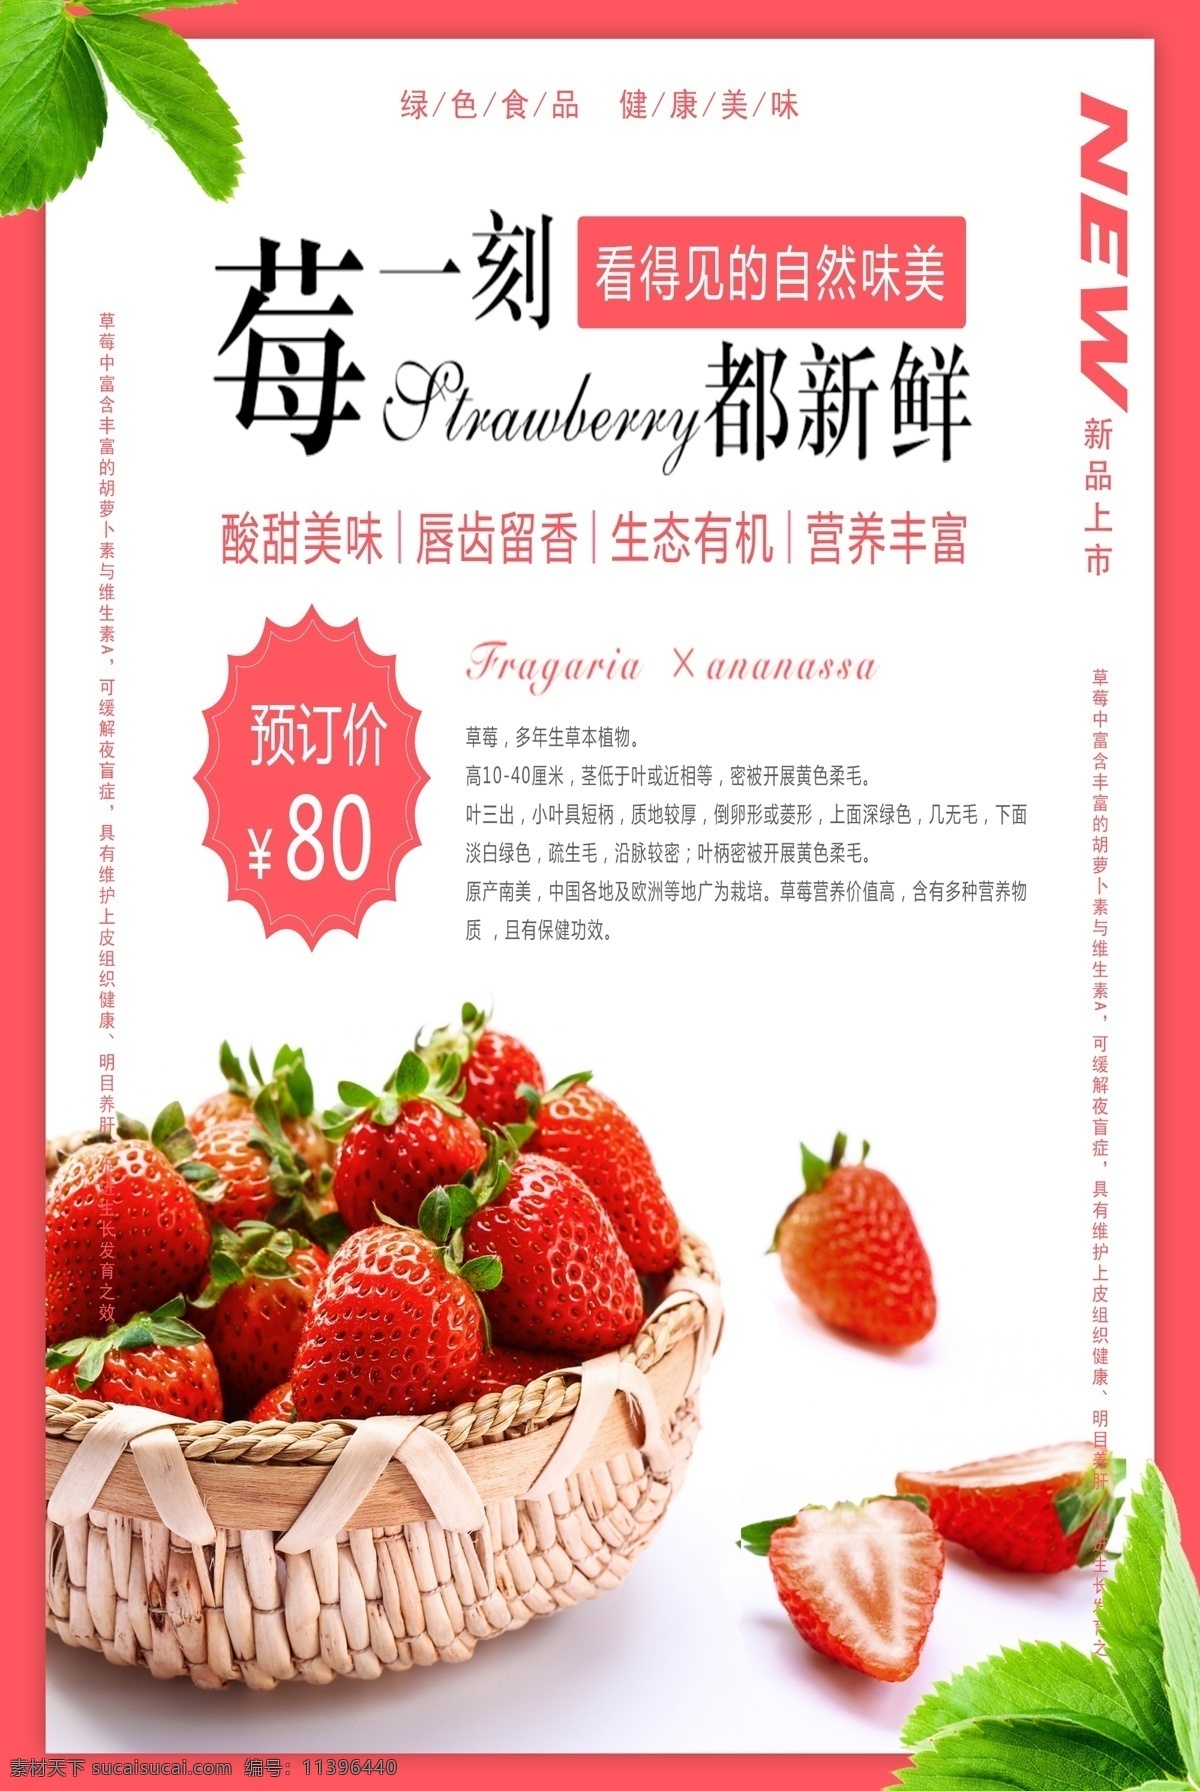 草莓 水果 新鲜 活动 宣传海报 宣传 海报 餐饮美食 类